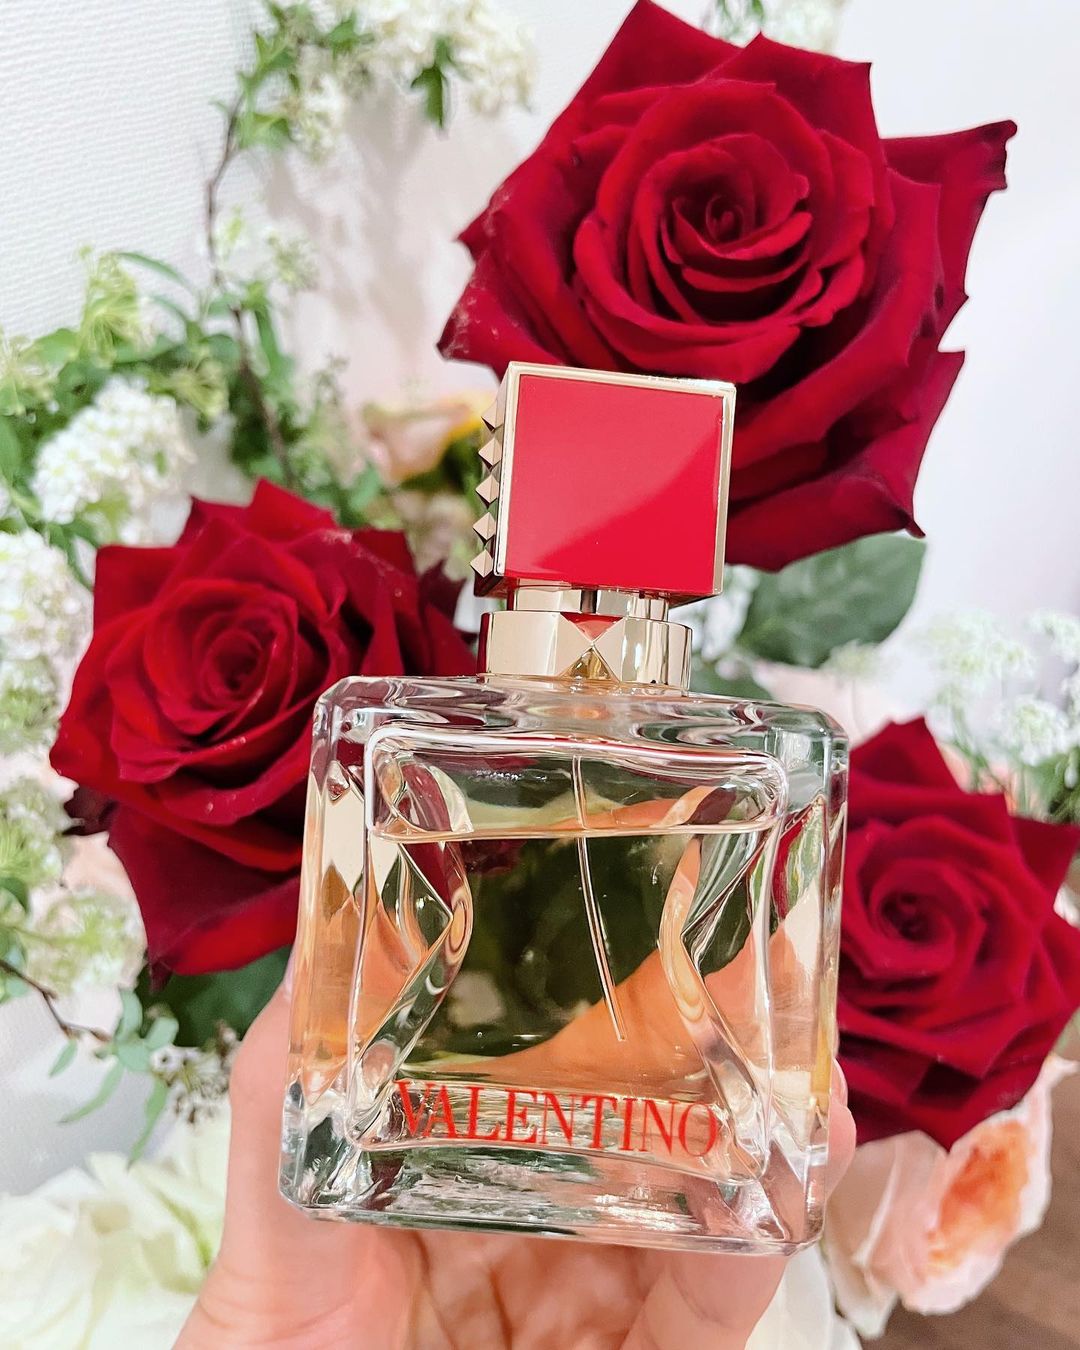 @有末麻祐子: @valentino.beauty の香水だなんて 気分が上がる ヴァレンティノ ヴォーチェ ヴィヴァ オードパルファン